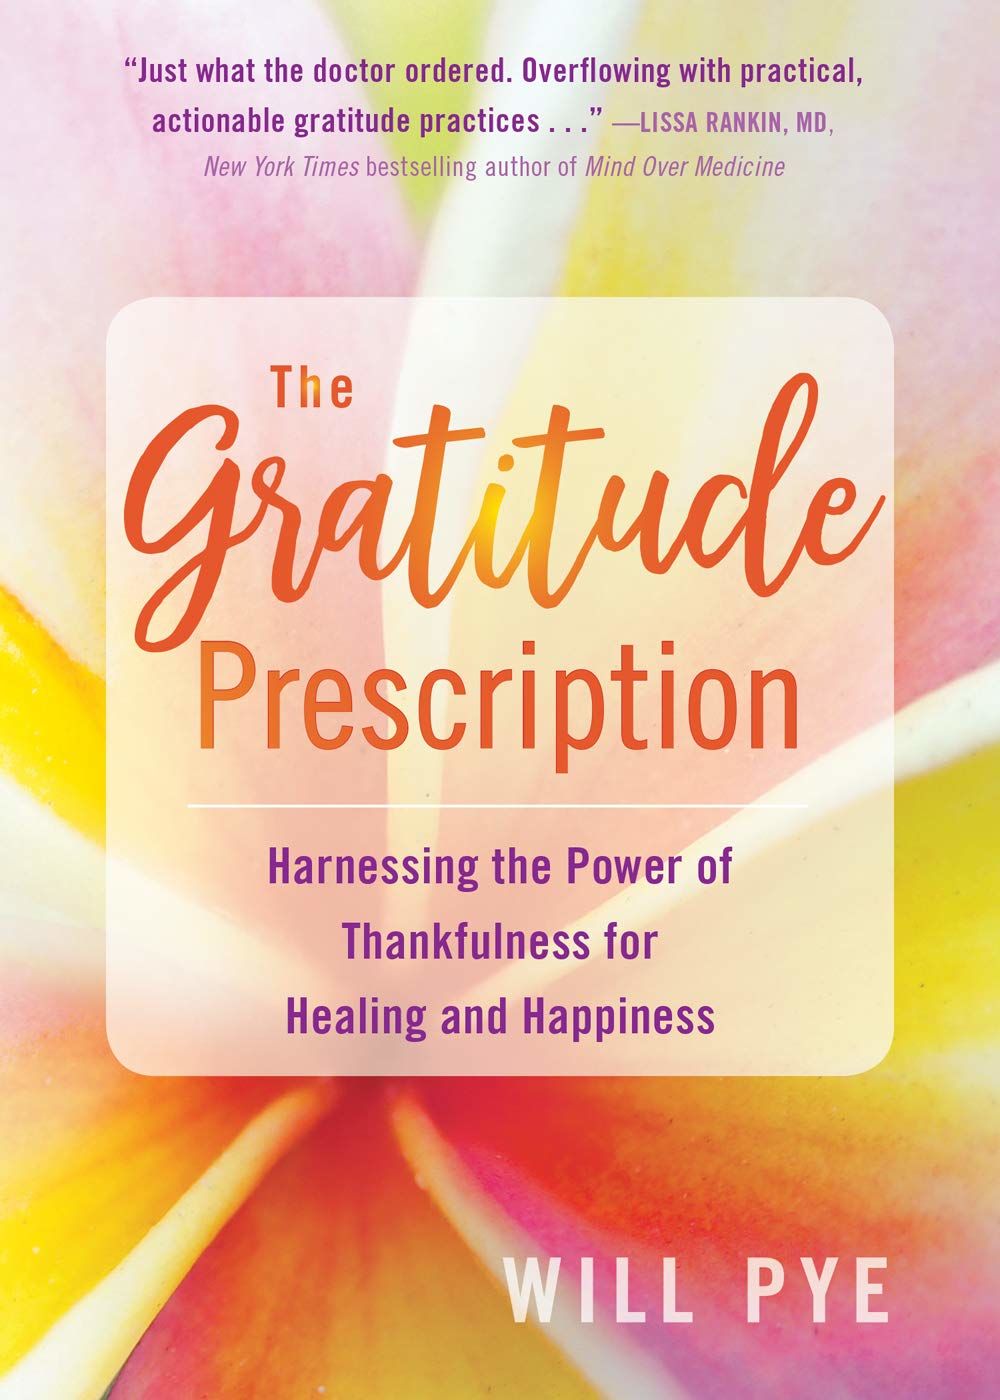 Gratitude Prescription by Will Pye